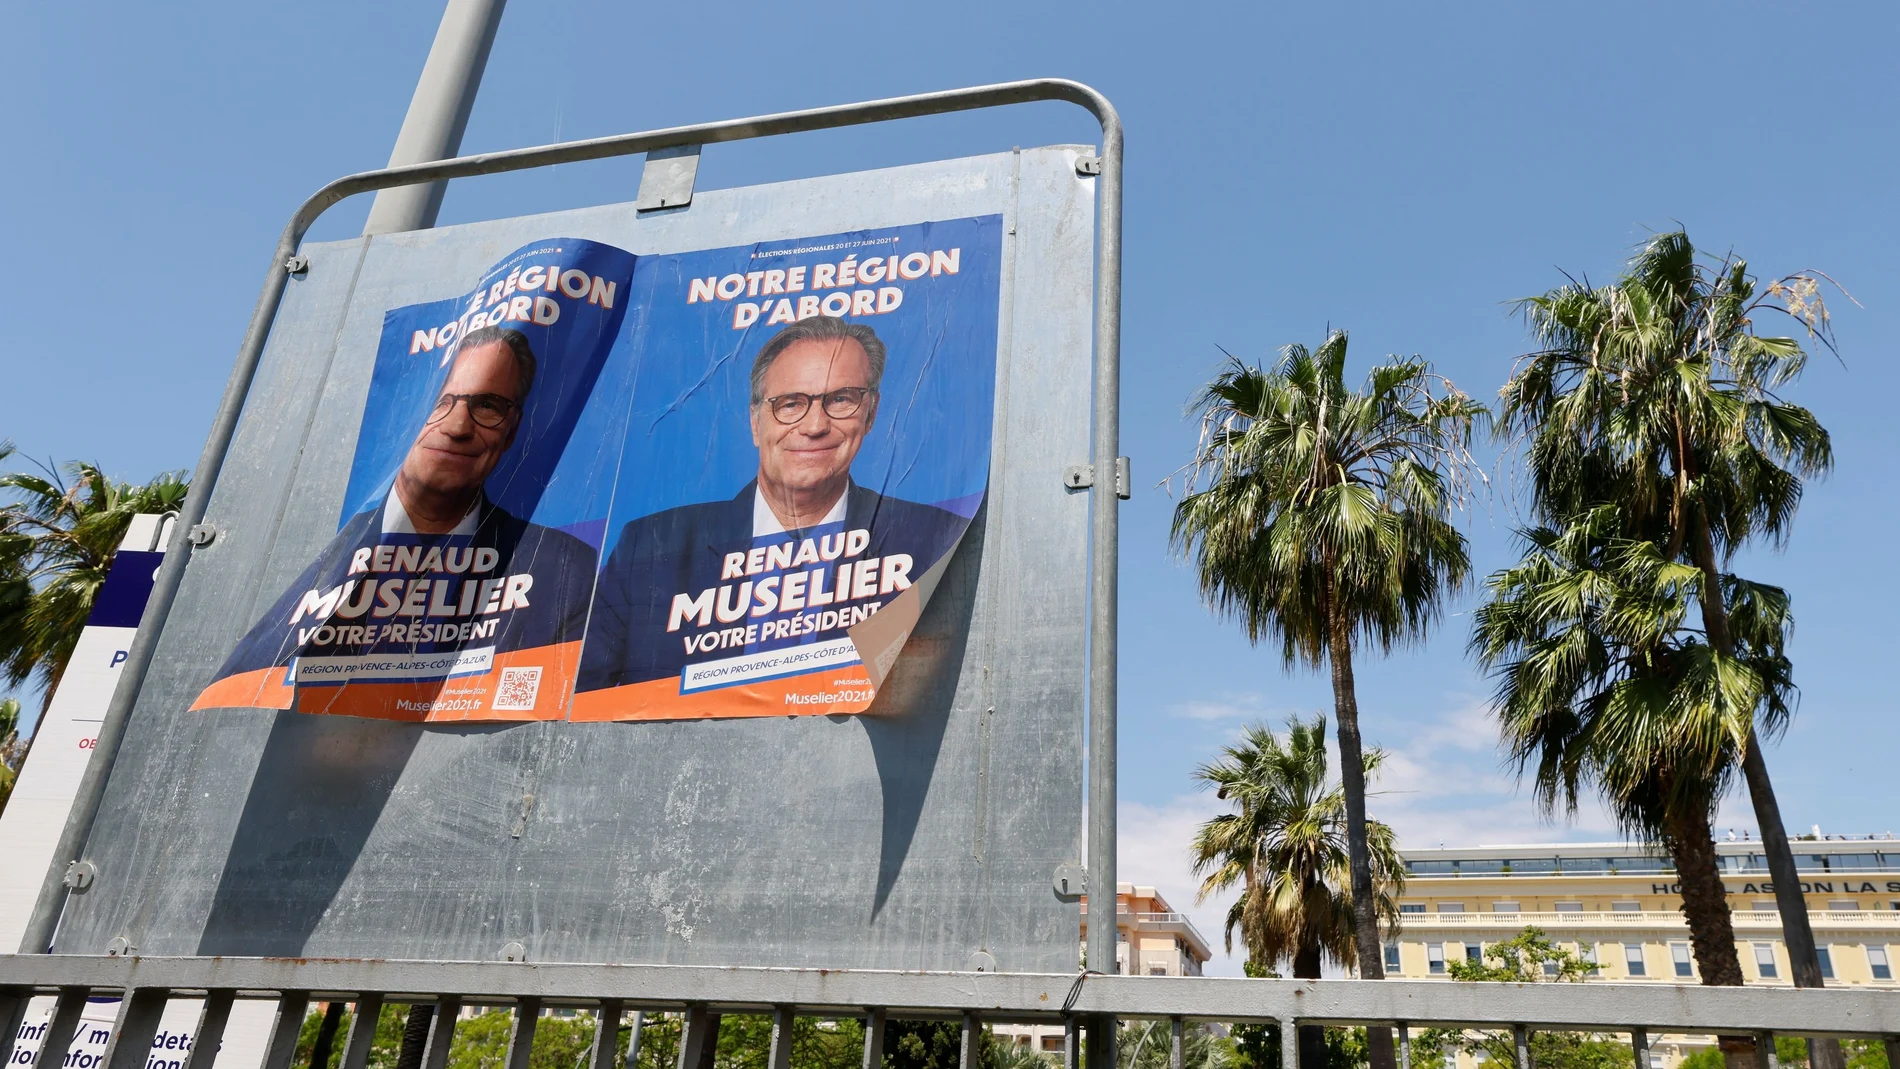 Un cartel electoral del conservador Renaud Muselie, el actual presidente de la región de Provenza Alpes Costa Azul (PACA)